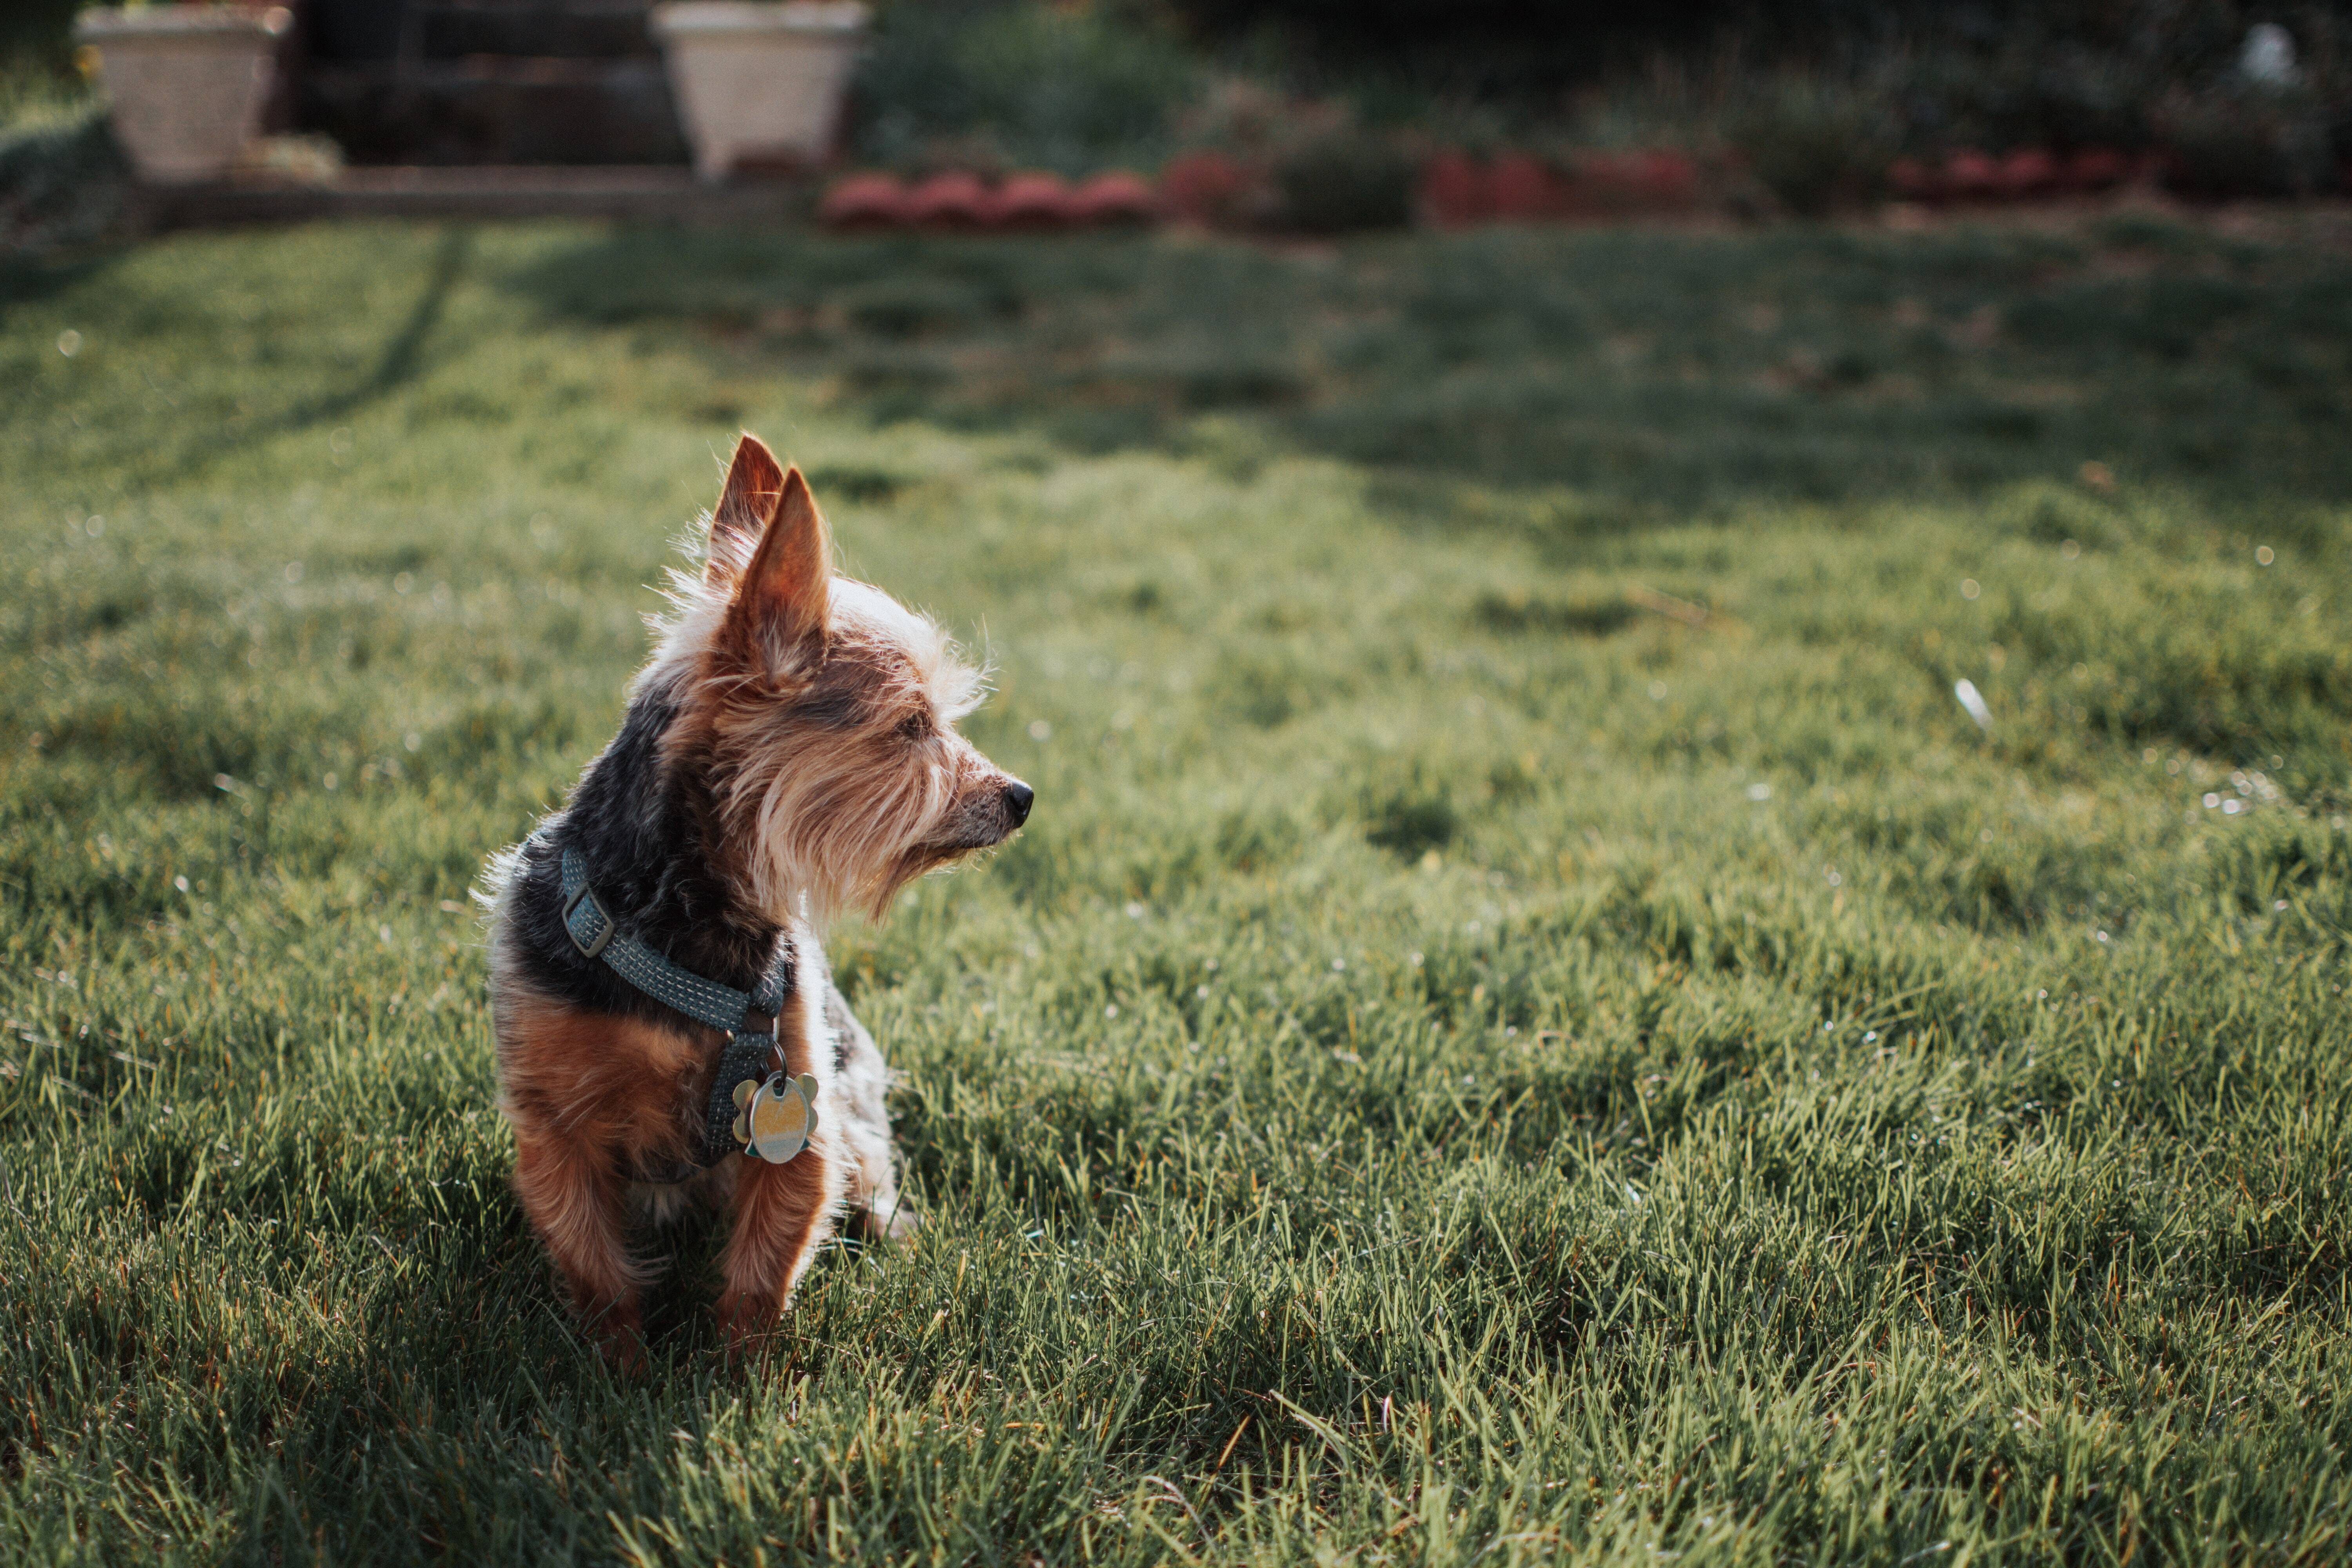 Esses cães não devem ser criados fora de casa, mas precisam de atividades ao ar livre. Foto: Kaylin Pacheco/Unsplash